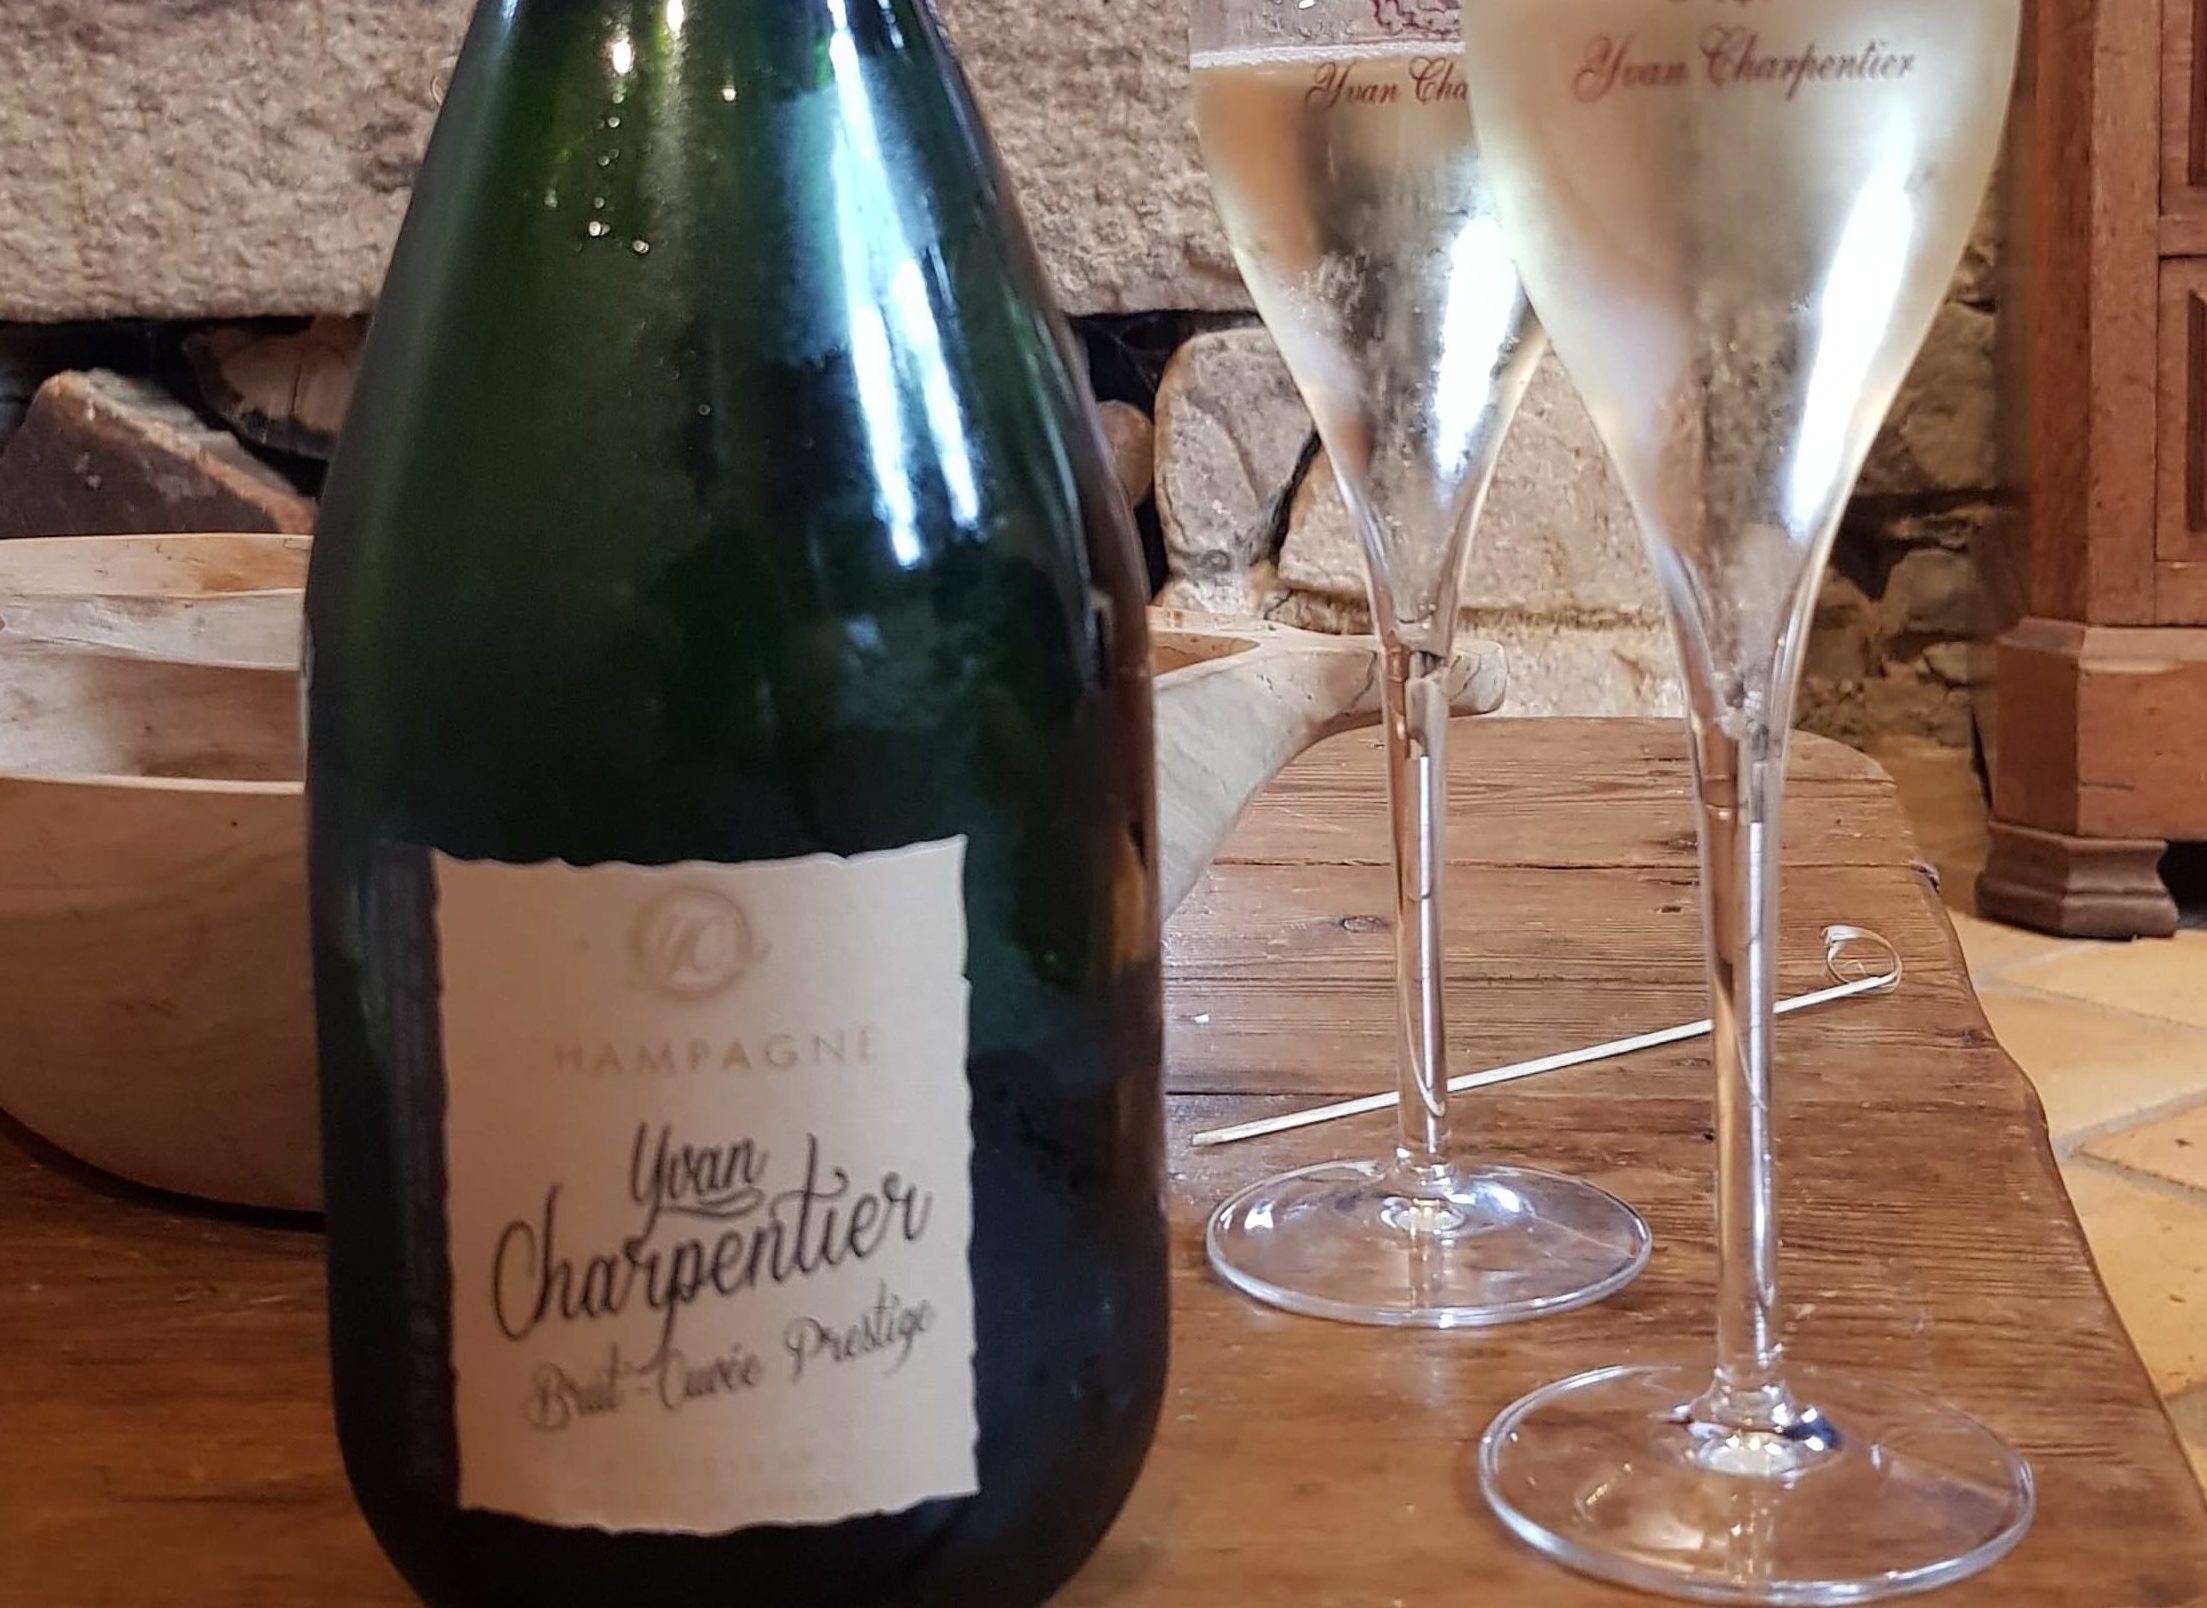 Champagne Yvan Charpentier